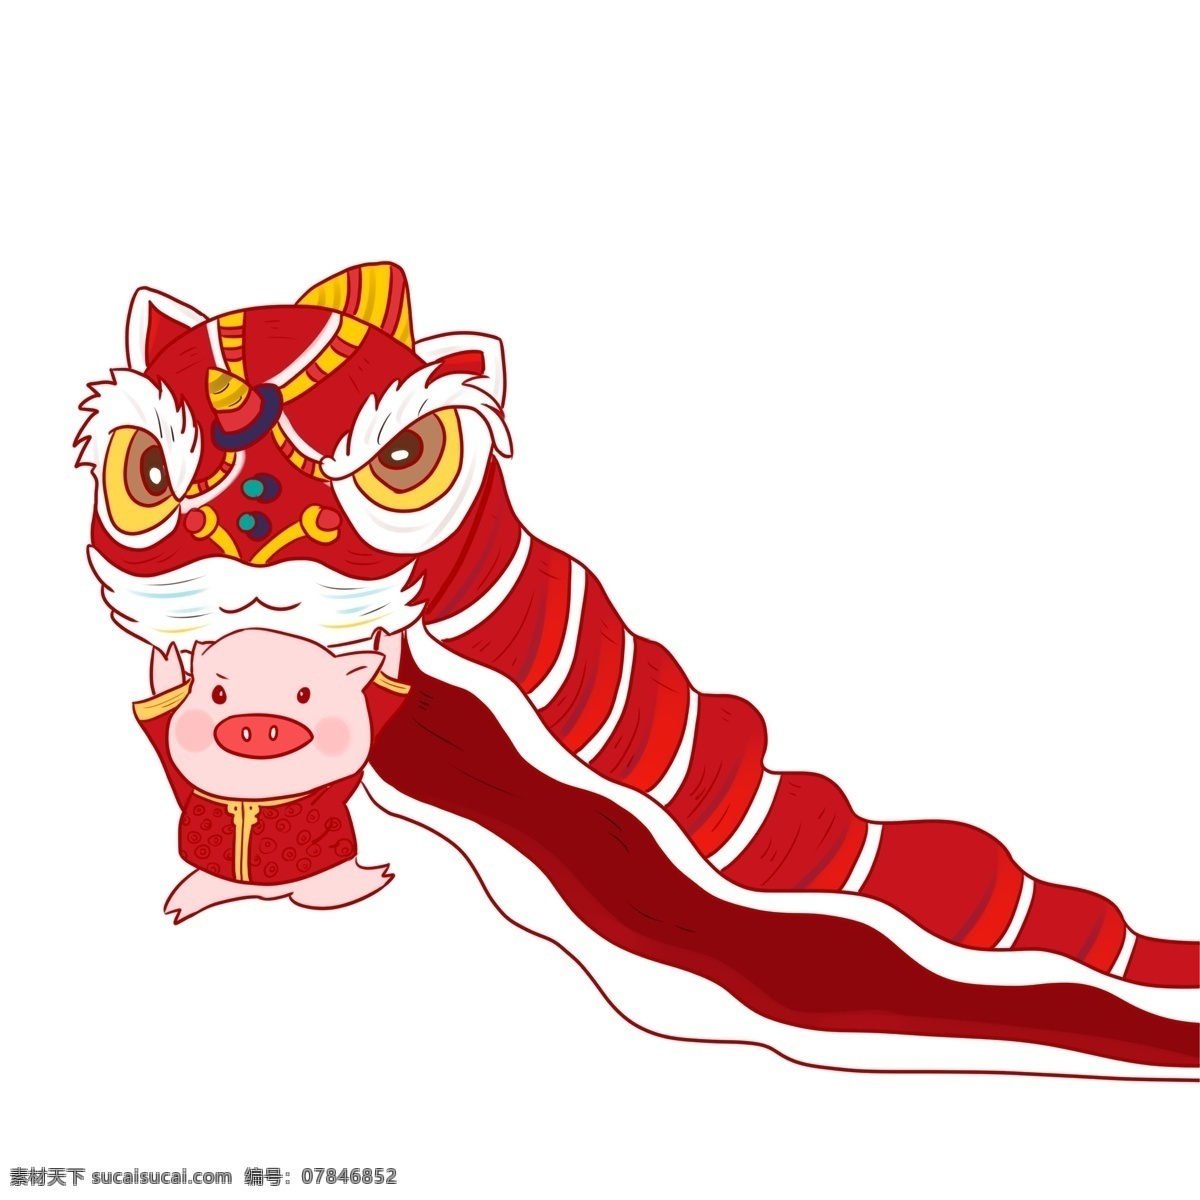 过年 舞狮 小 猪 中国 风 中国风 插画 春节 中国文化 手绘 新年 小猪 卡通小猪 猪年形象 小猪形象 小猪舞狮 中国年